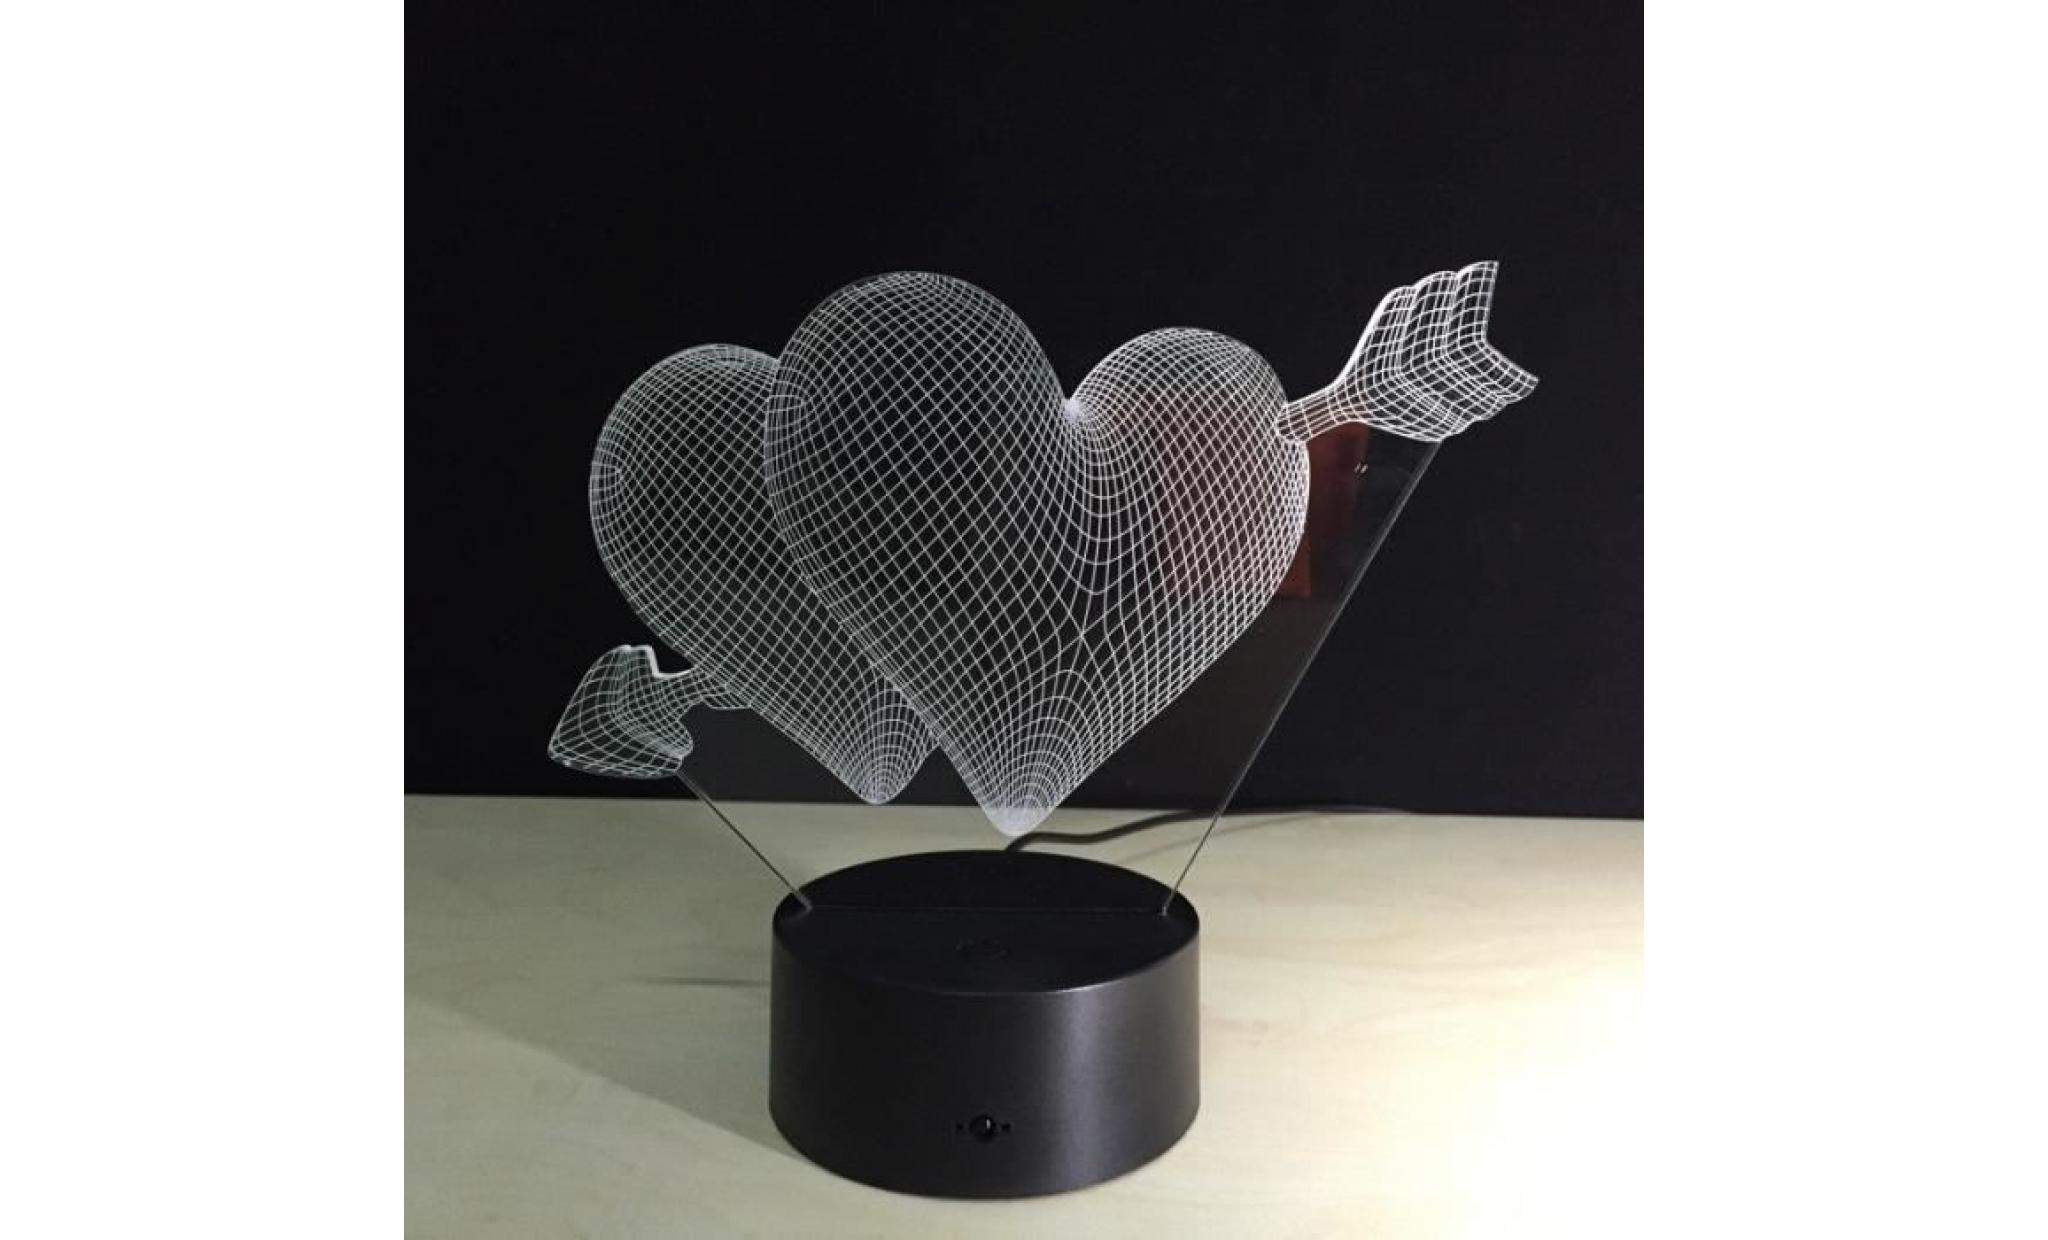 tube led flèche à travers le coeur acrylique 3d led lampe de table colorée lampe usb rechargeable #pa 767 pas cher